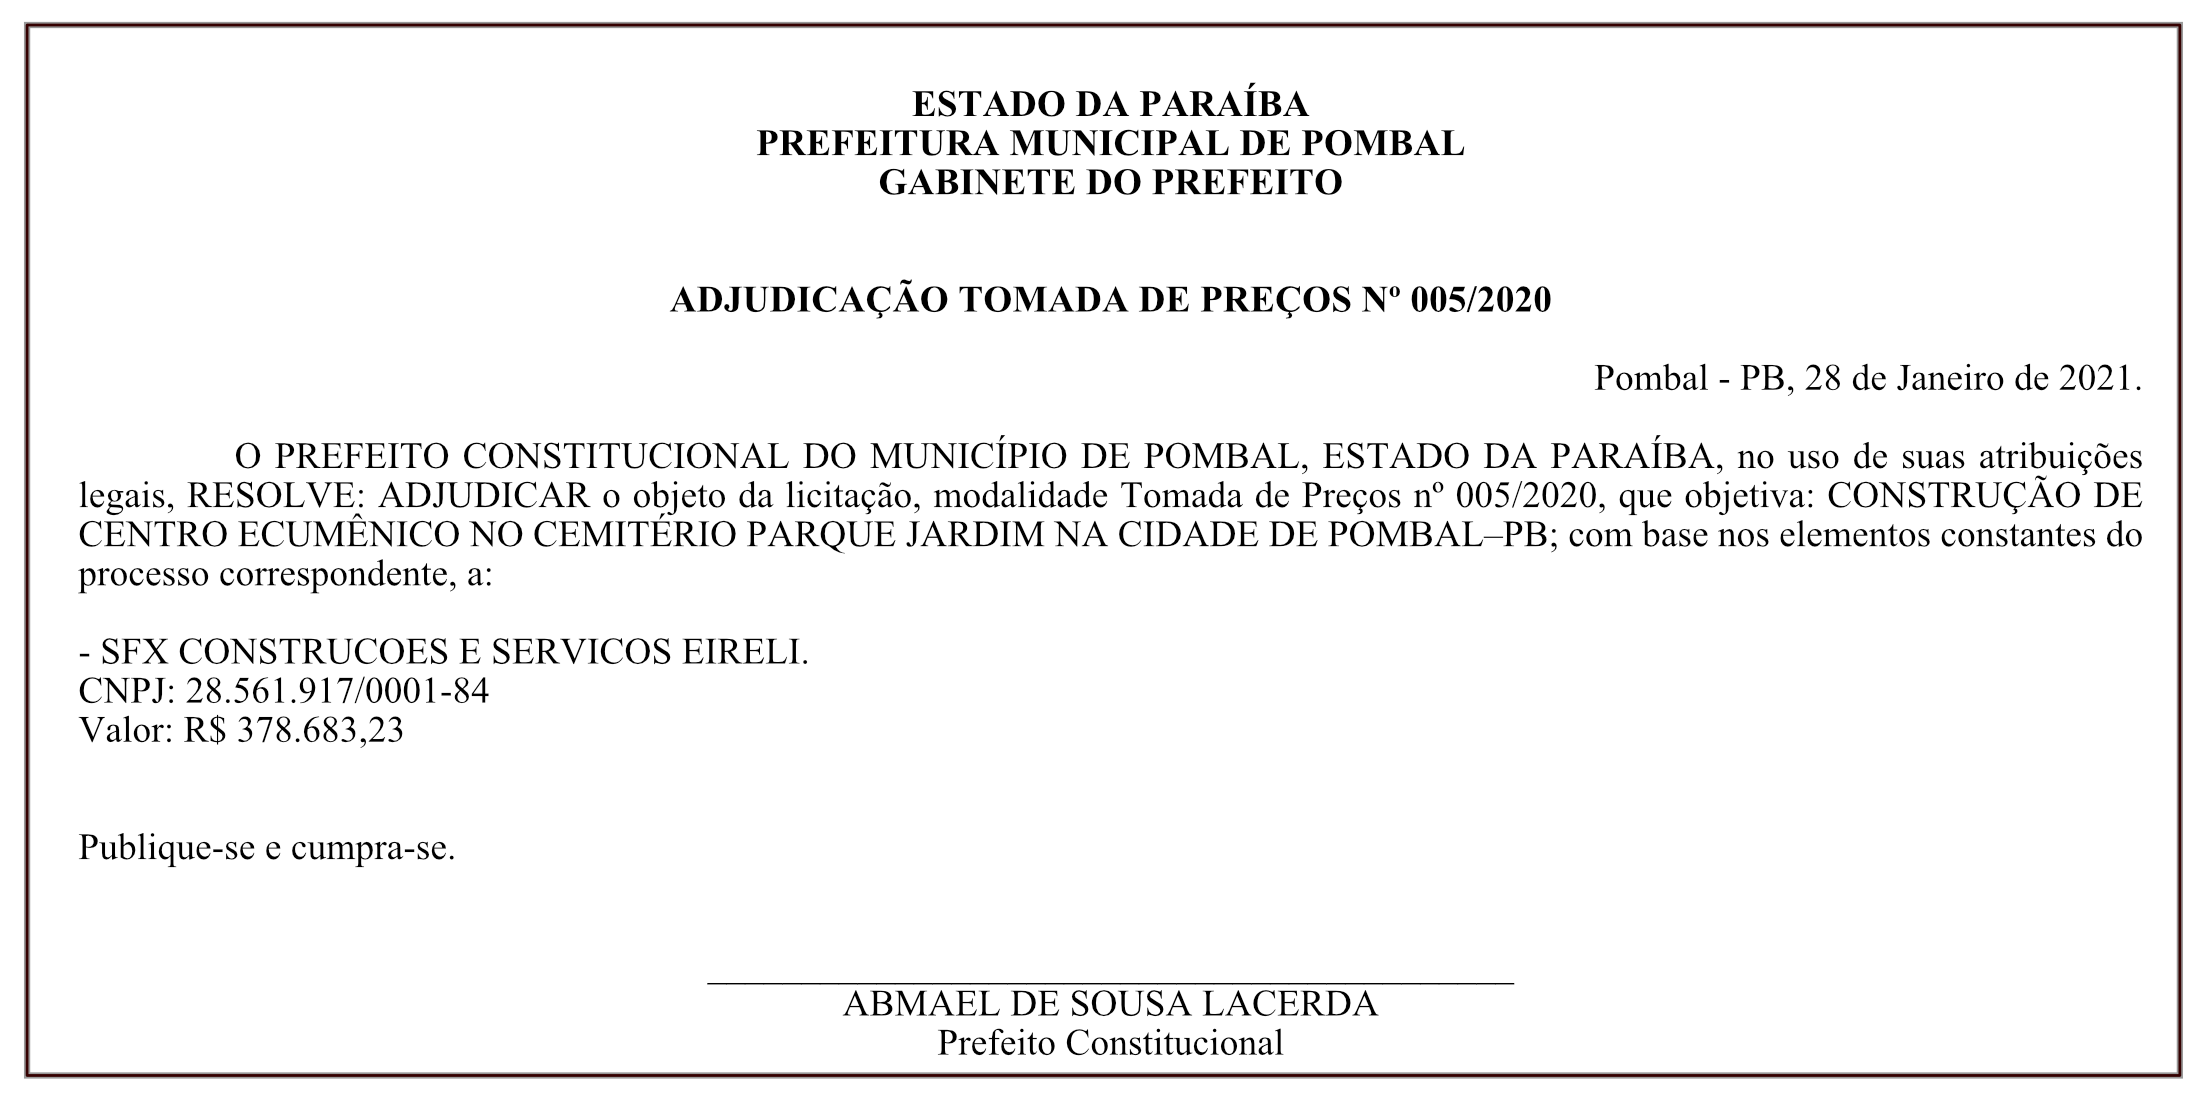 PREFEITURA MUNICIPAL DE POMBAL – GABINETE DO PREFEITO – ADJUDICAÇÃO – TOMADA DE PREÇOS Nº 005/2020